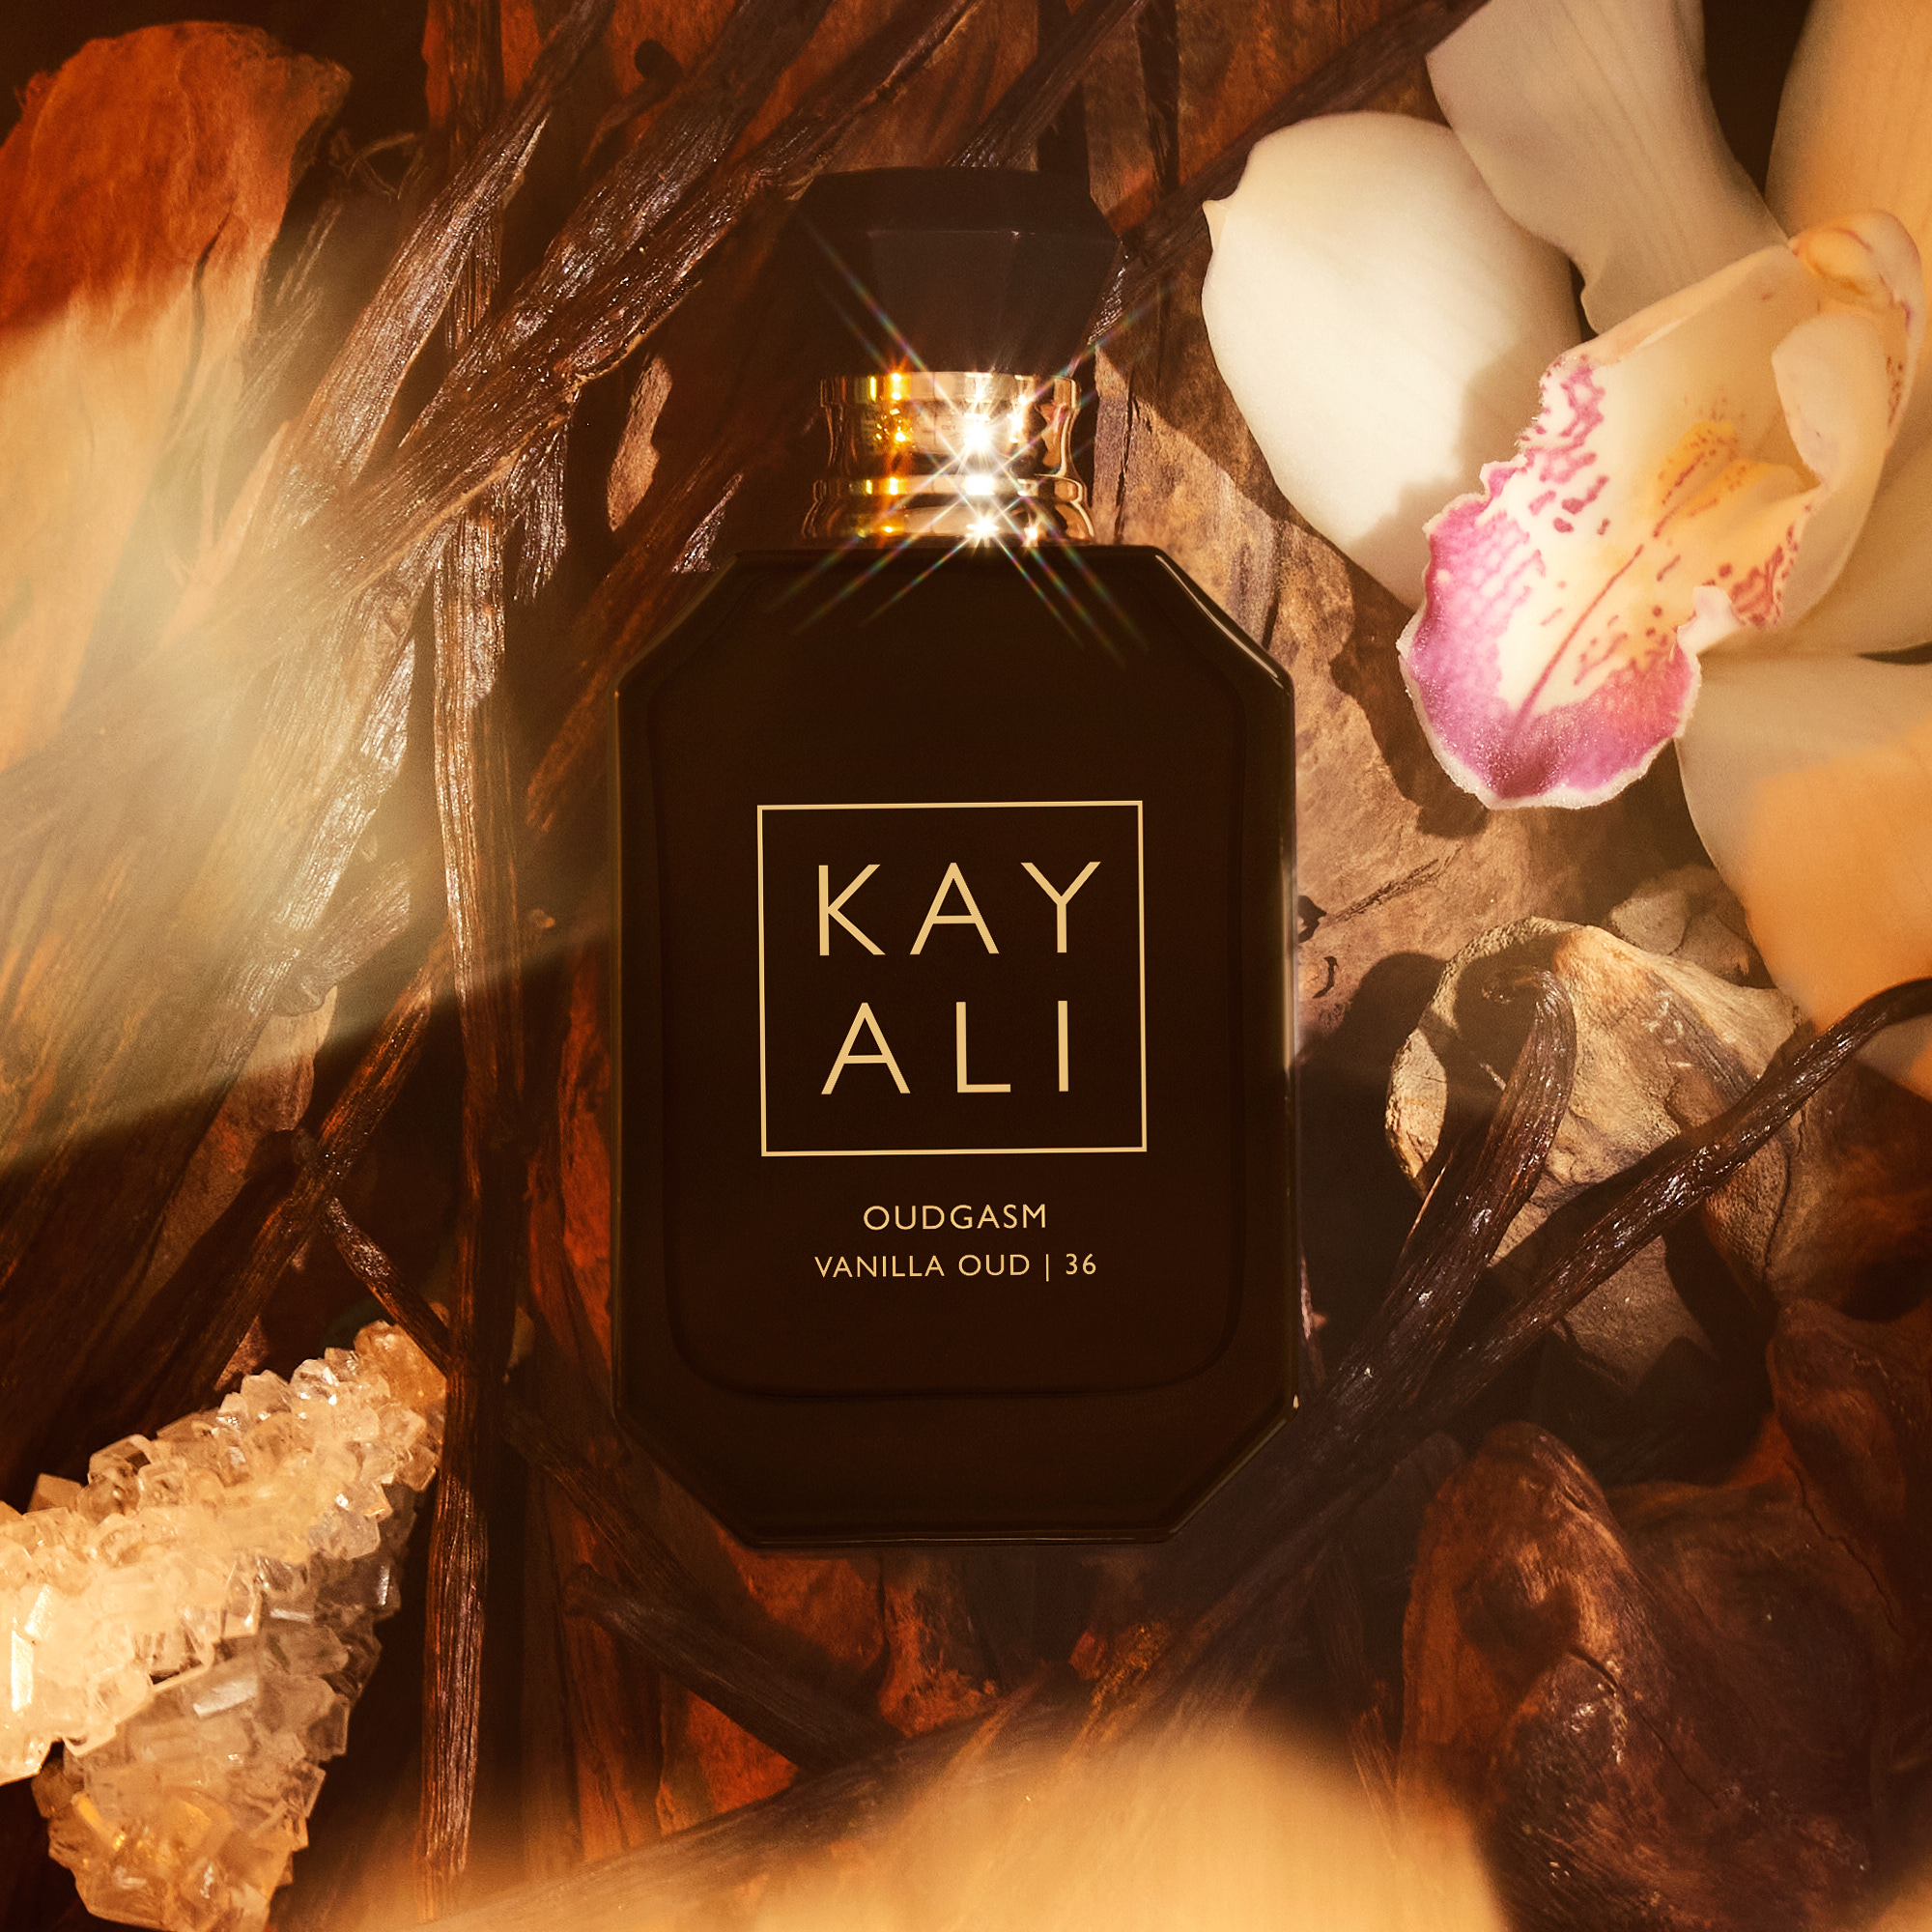 kayali perfume utopia